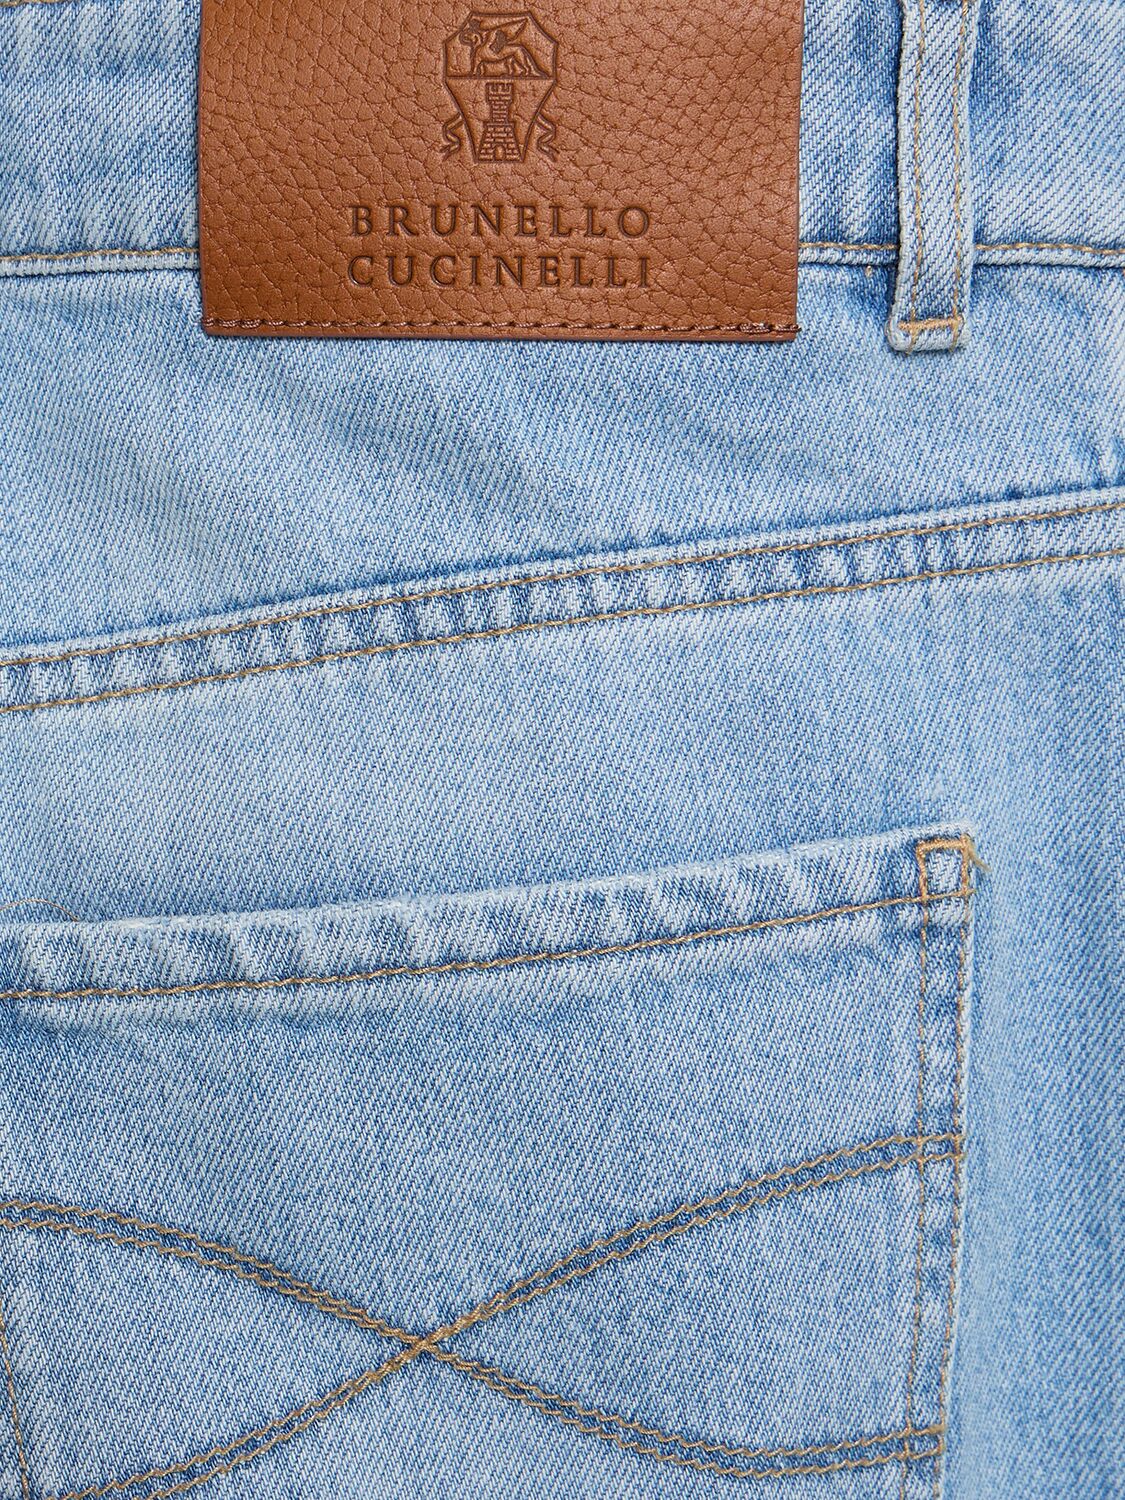 Shop Brunello Cucinelli Cotton Denim Straight Jeans In Light Wash